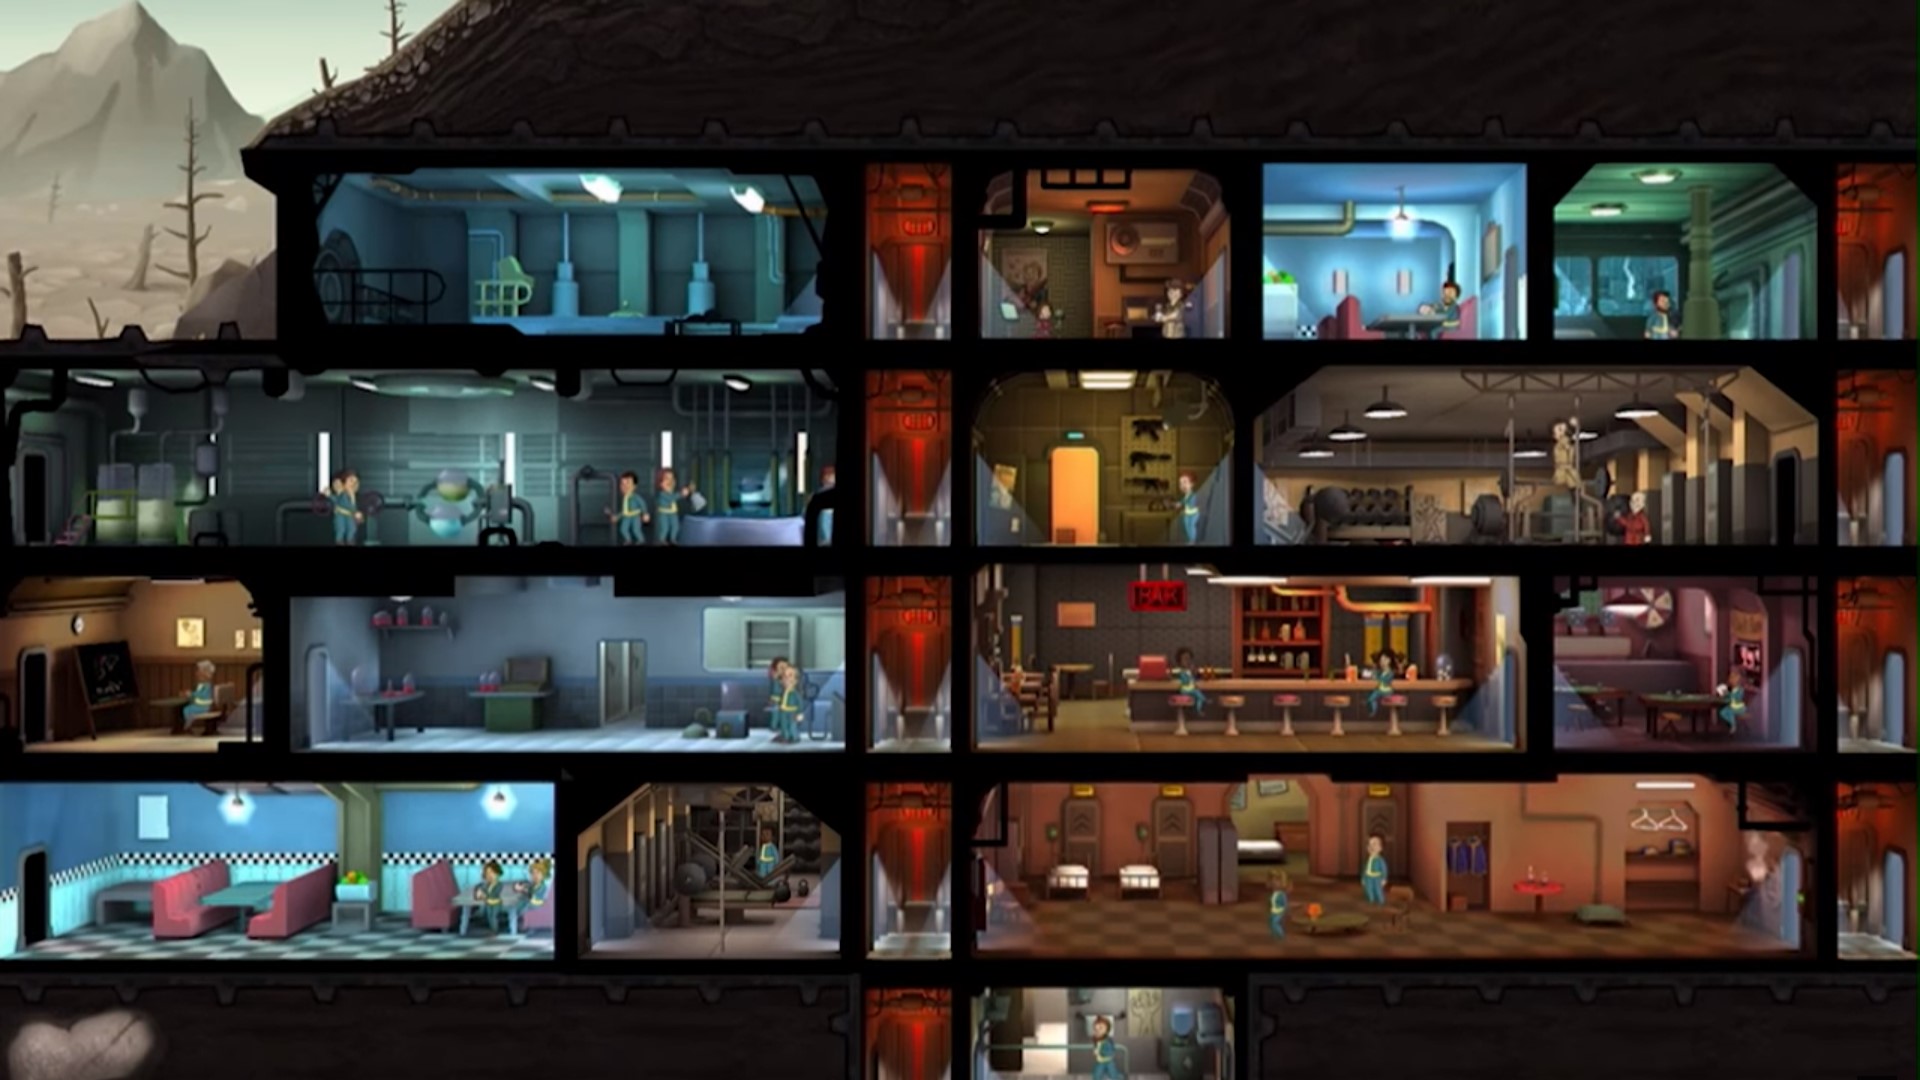 משחקי אסטרטגיה ניידים הטובים ביותר: מקלט Fallout. תמונה מציגה מקלט לנפילה עם הרבה חדרים ואנשים בתוכו